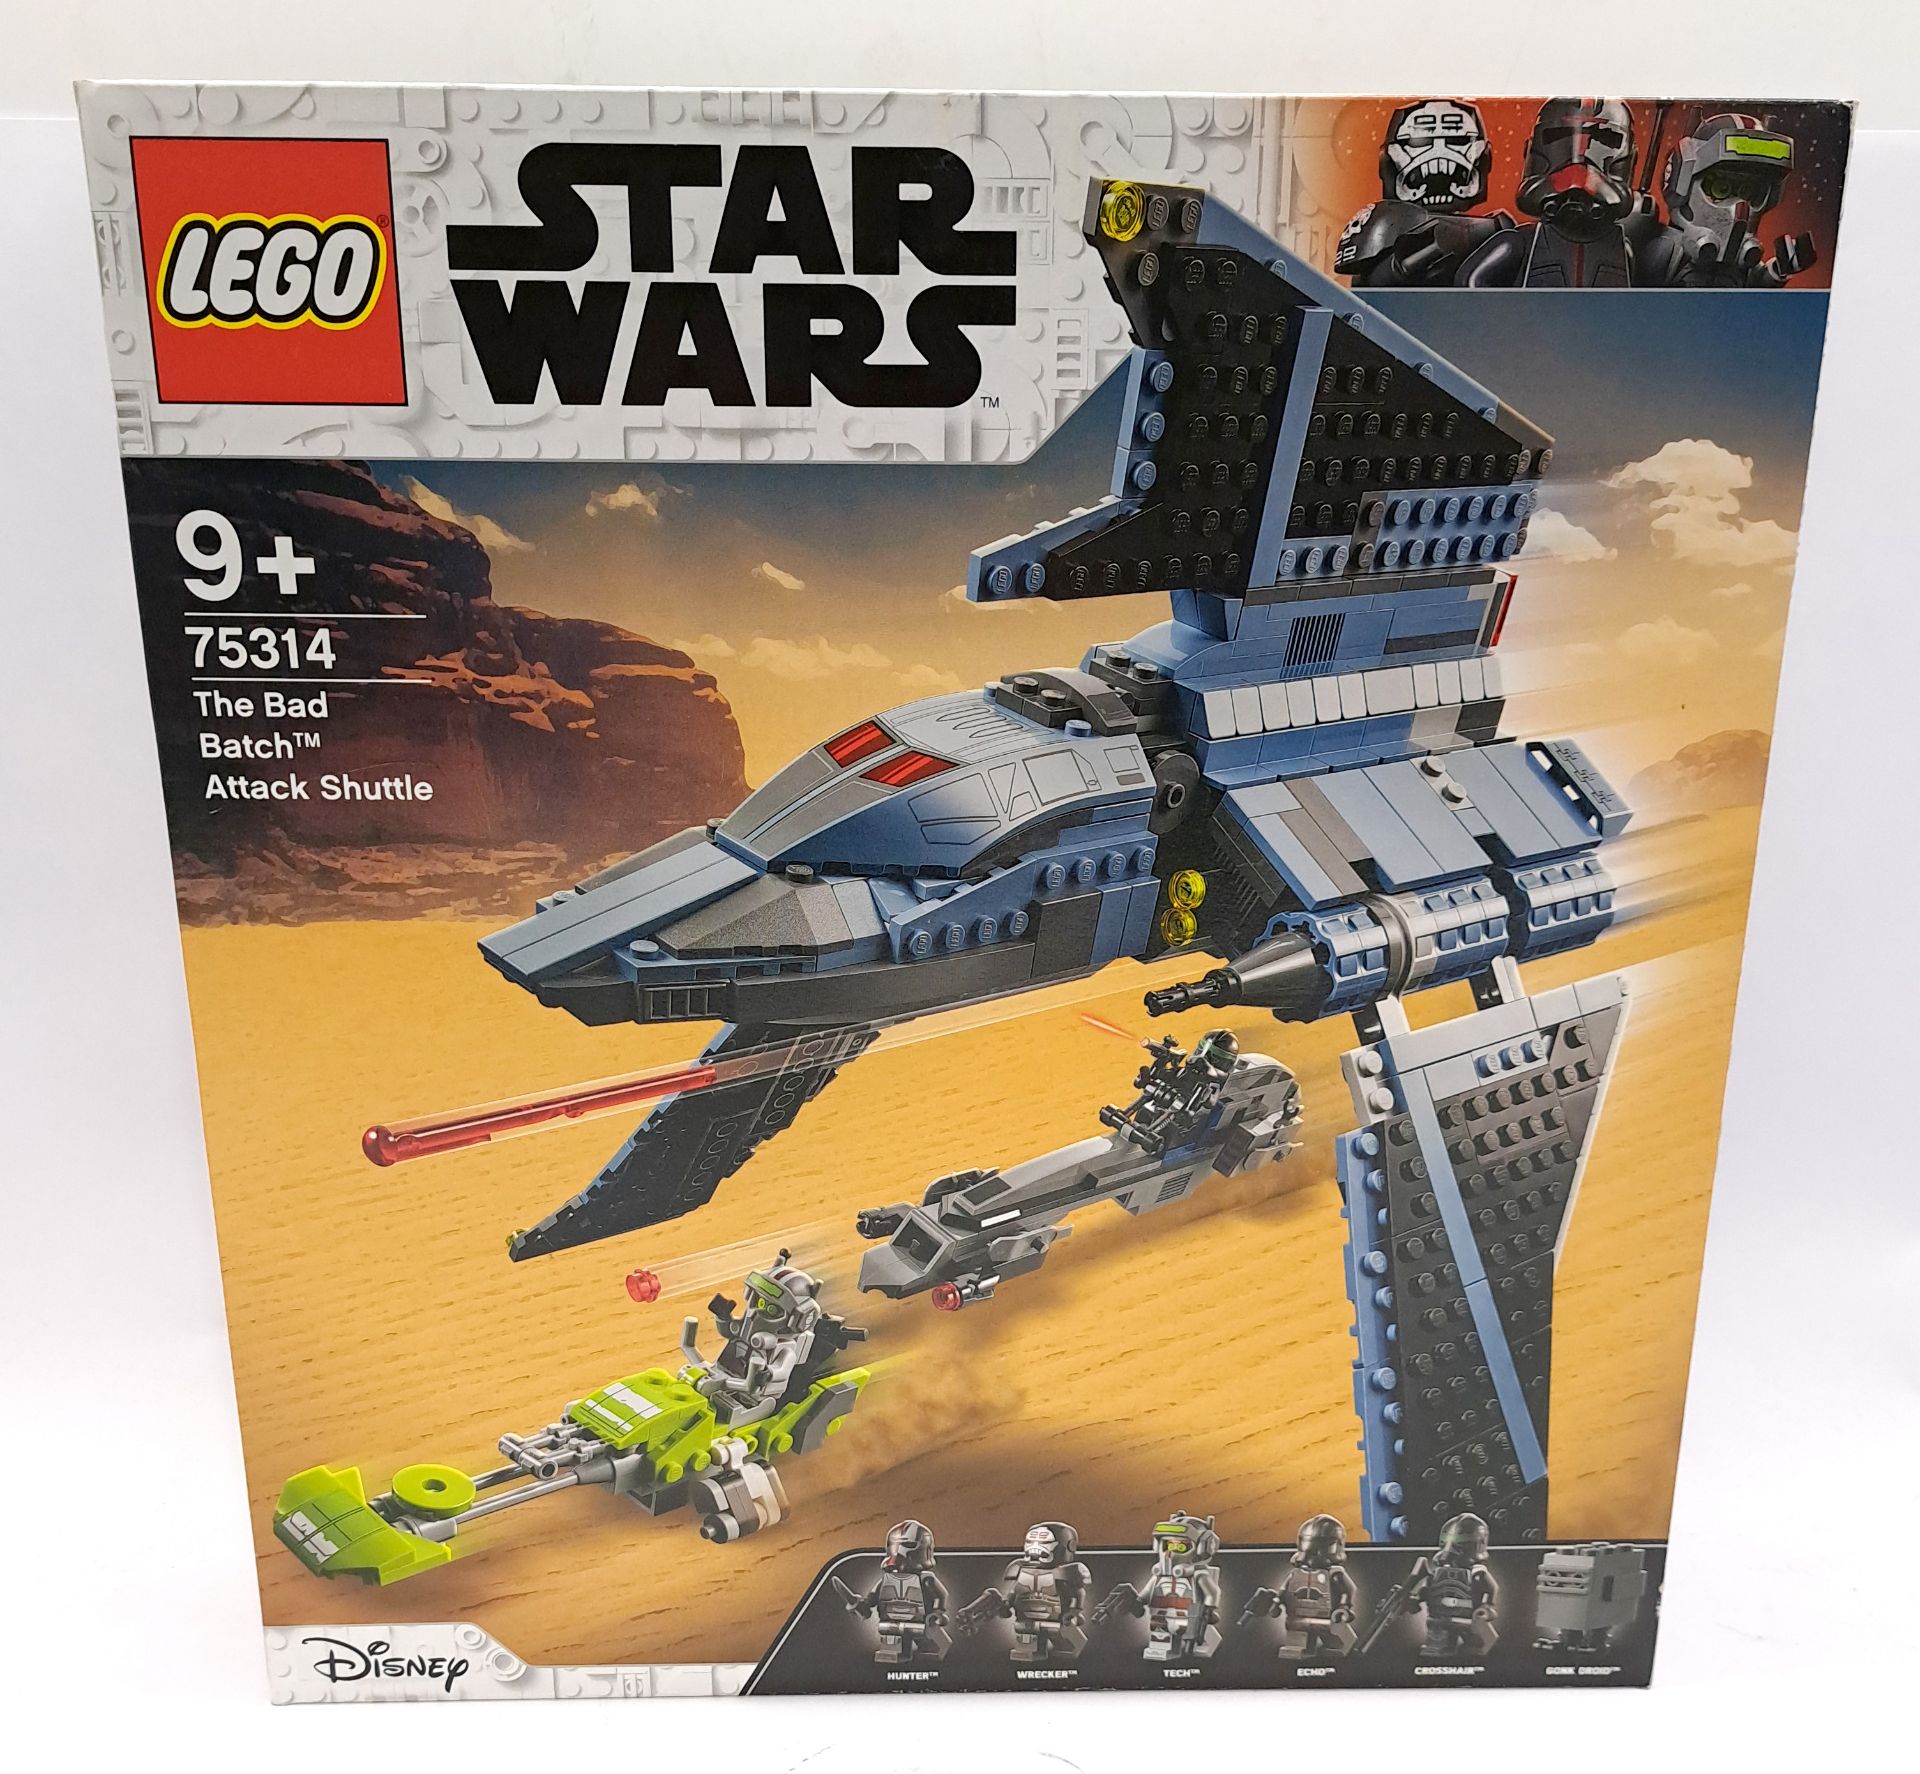 Lego Star Wars The Bad Batch Attacj Shuttle #75314